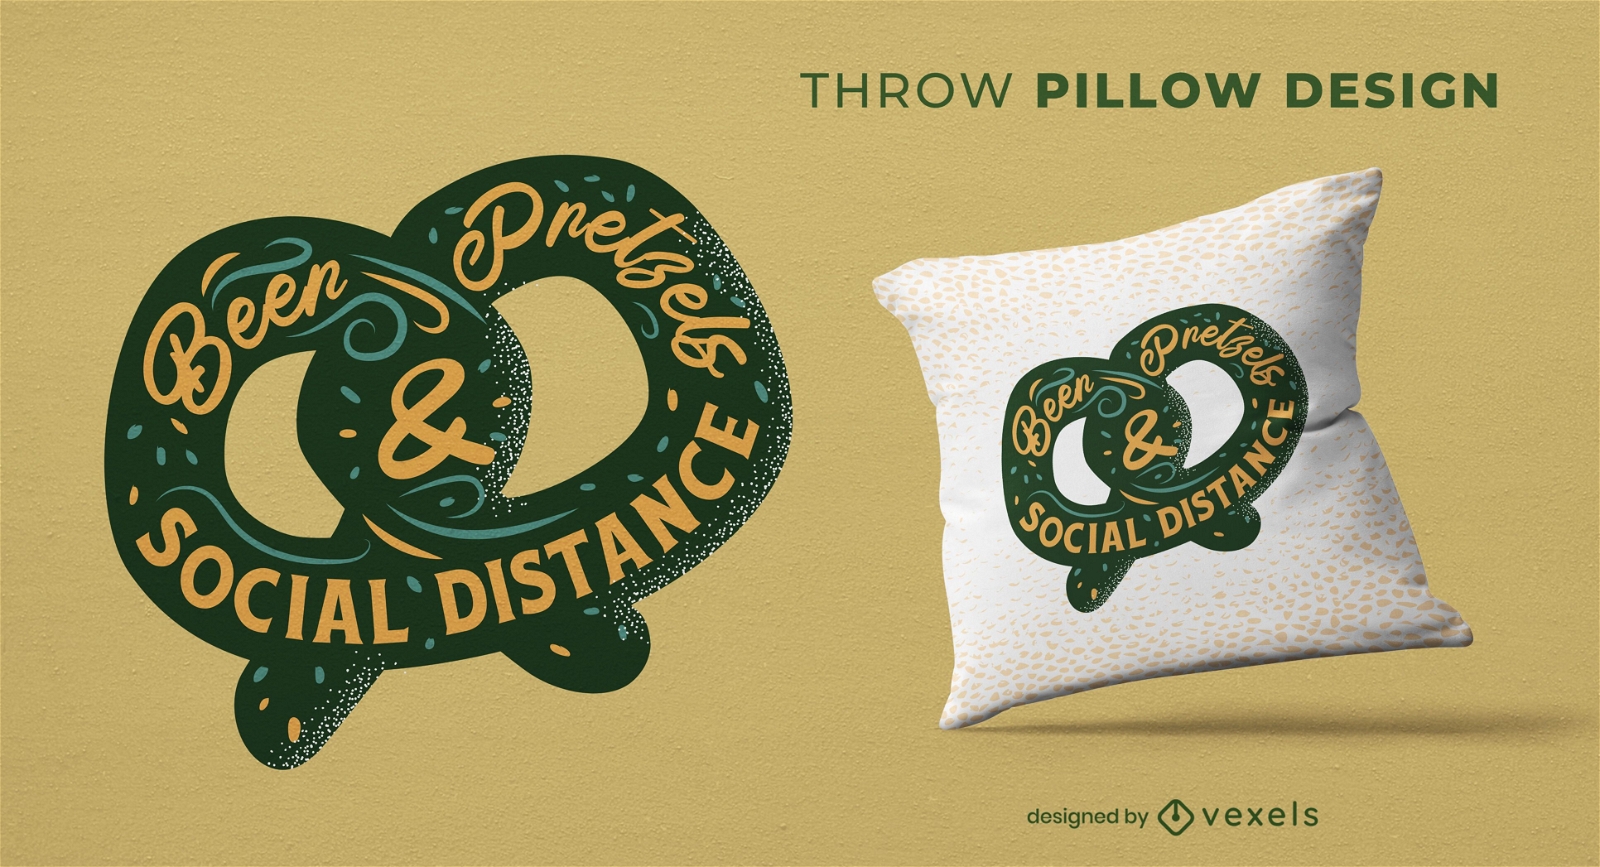 Pretzel & beer throw pillow design